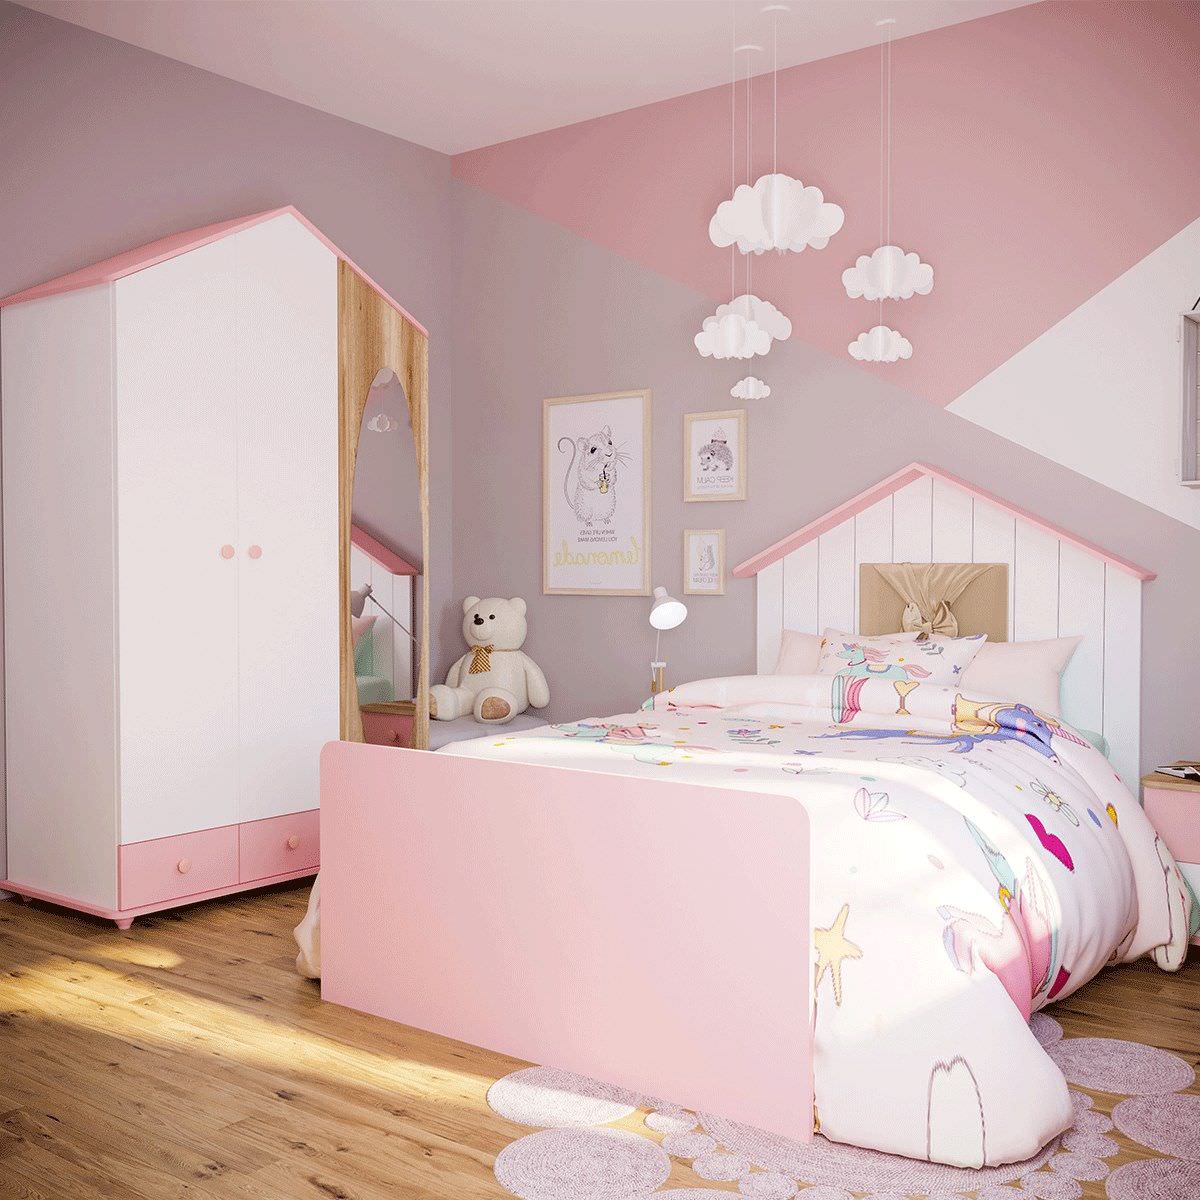 Thiết kế phòng ngủ bé gái giường ngủ hình ngôi nhà mang tông màu hồng siêu đáng yêu